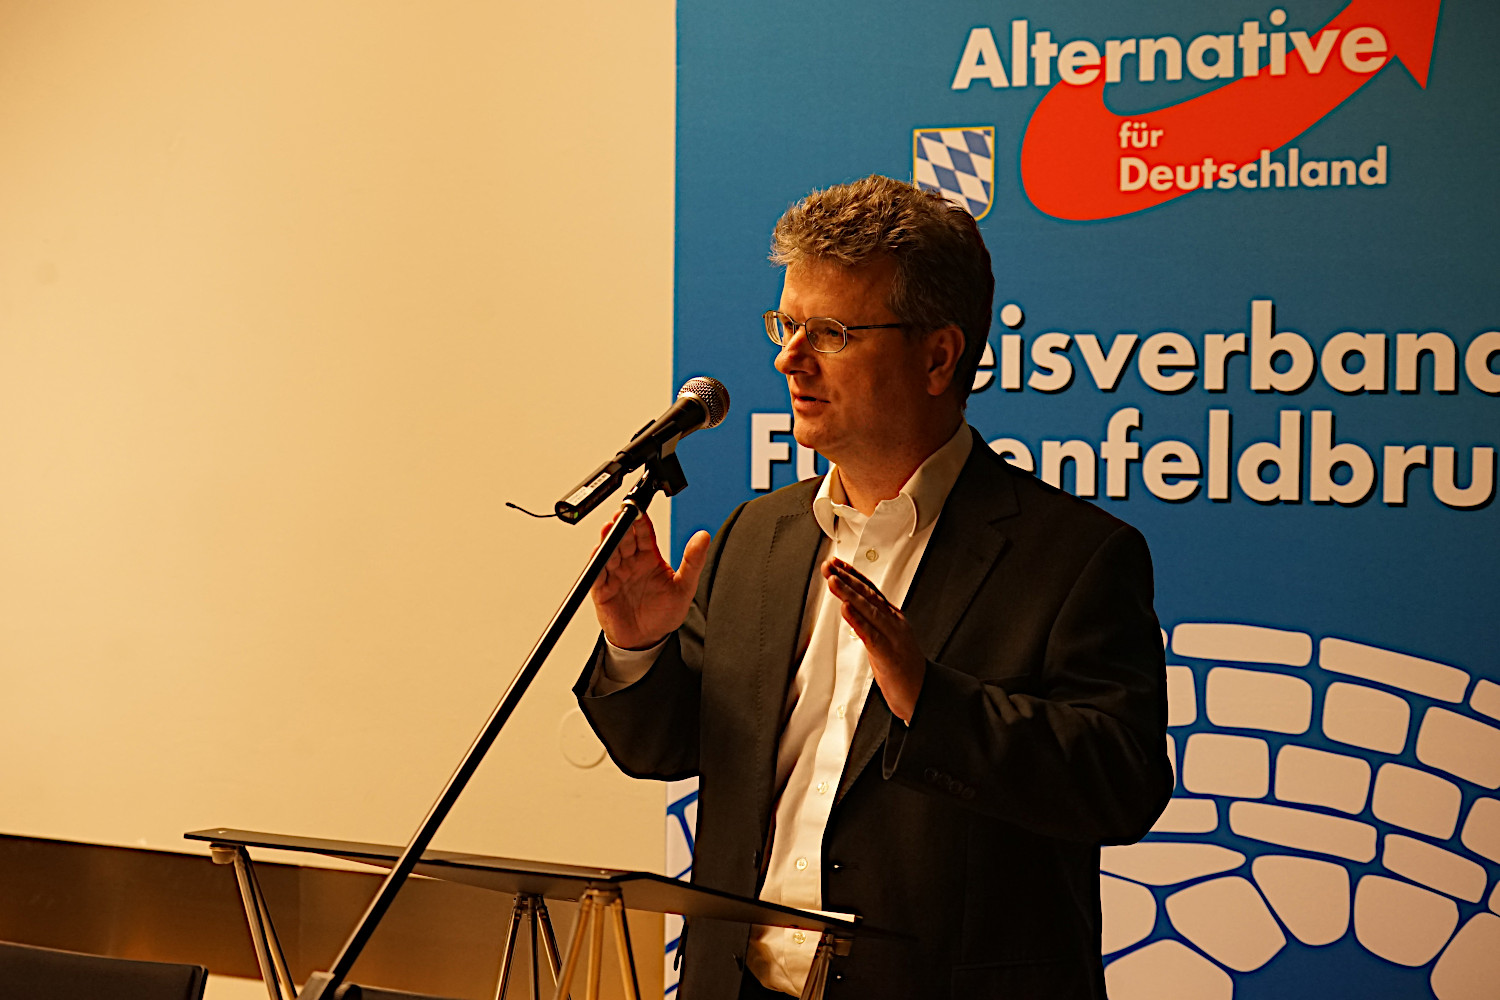 Begrüßung durch OV-Vorsitzenden Matthias Hintermeier